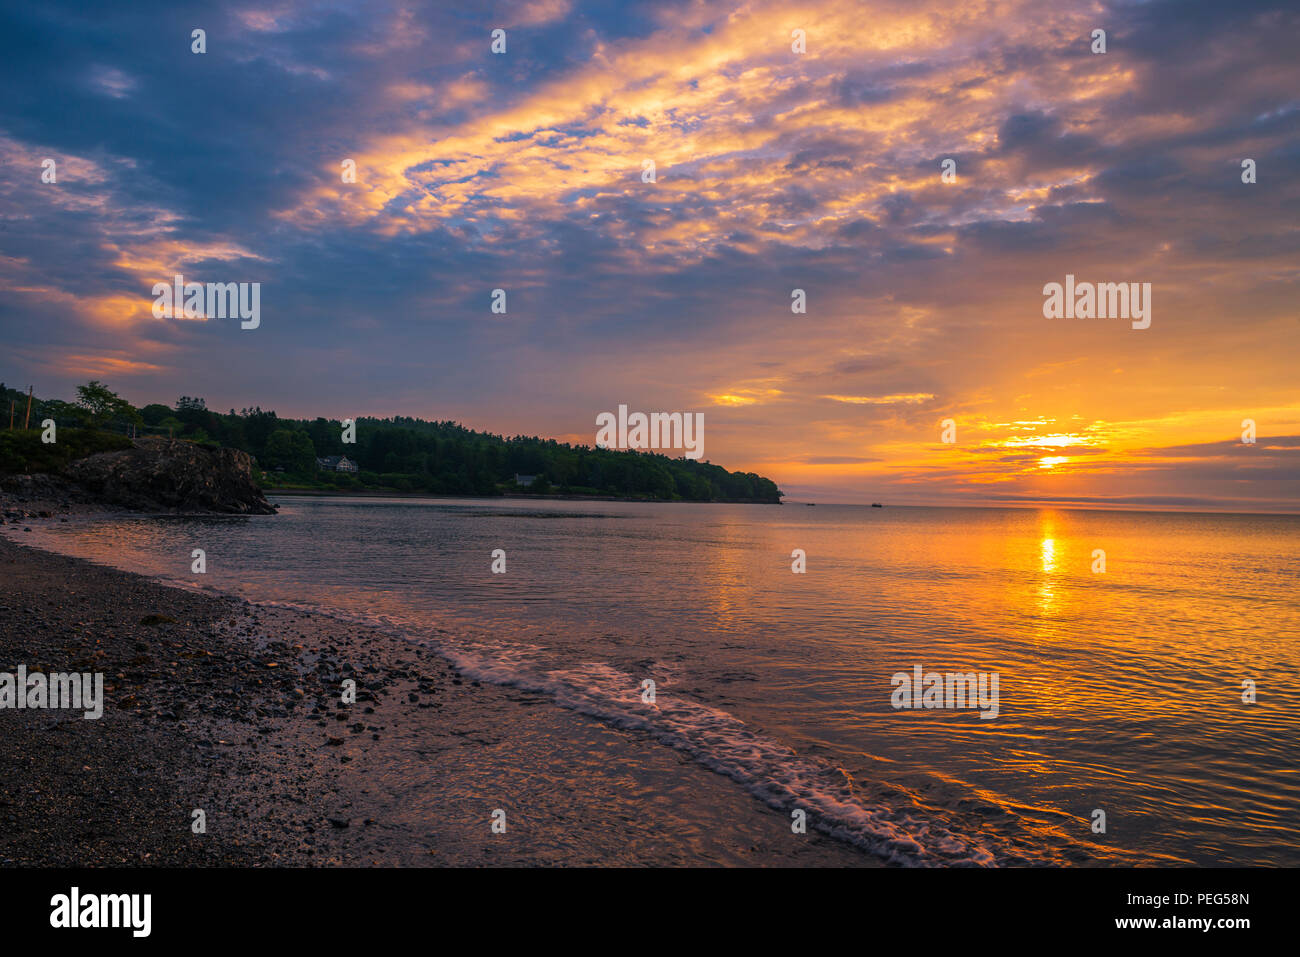 sunrise on the sea Stock Photo